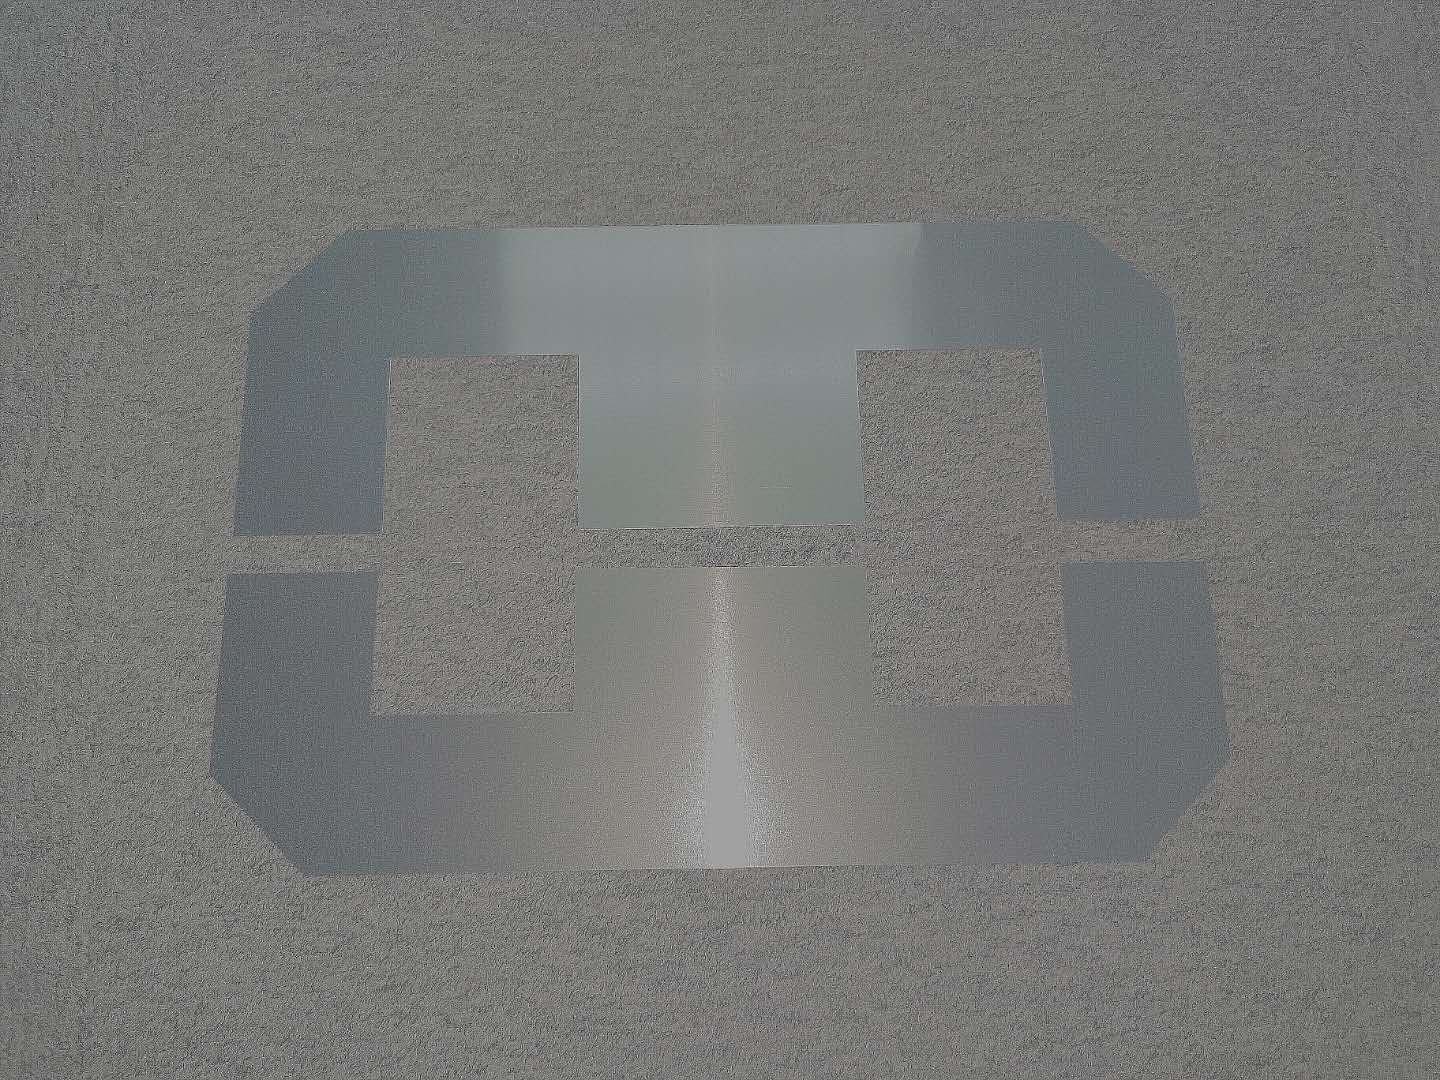 Panneau de matériau de blindage avec performances anti-interférences électromagnétiques.